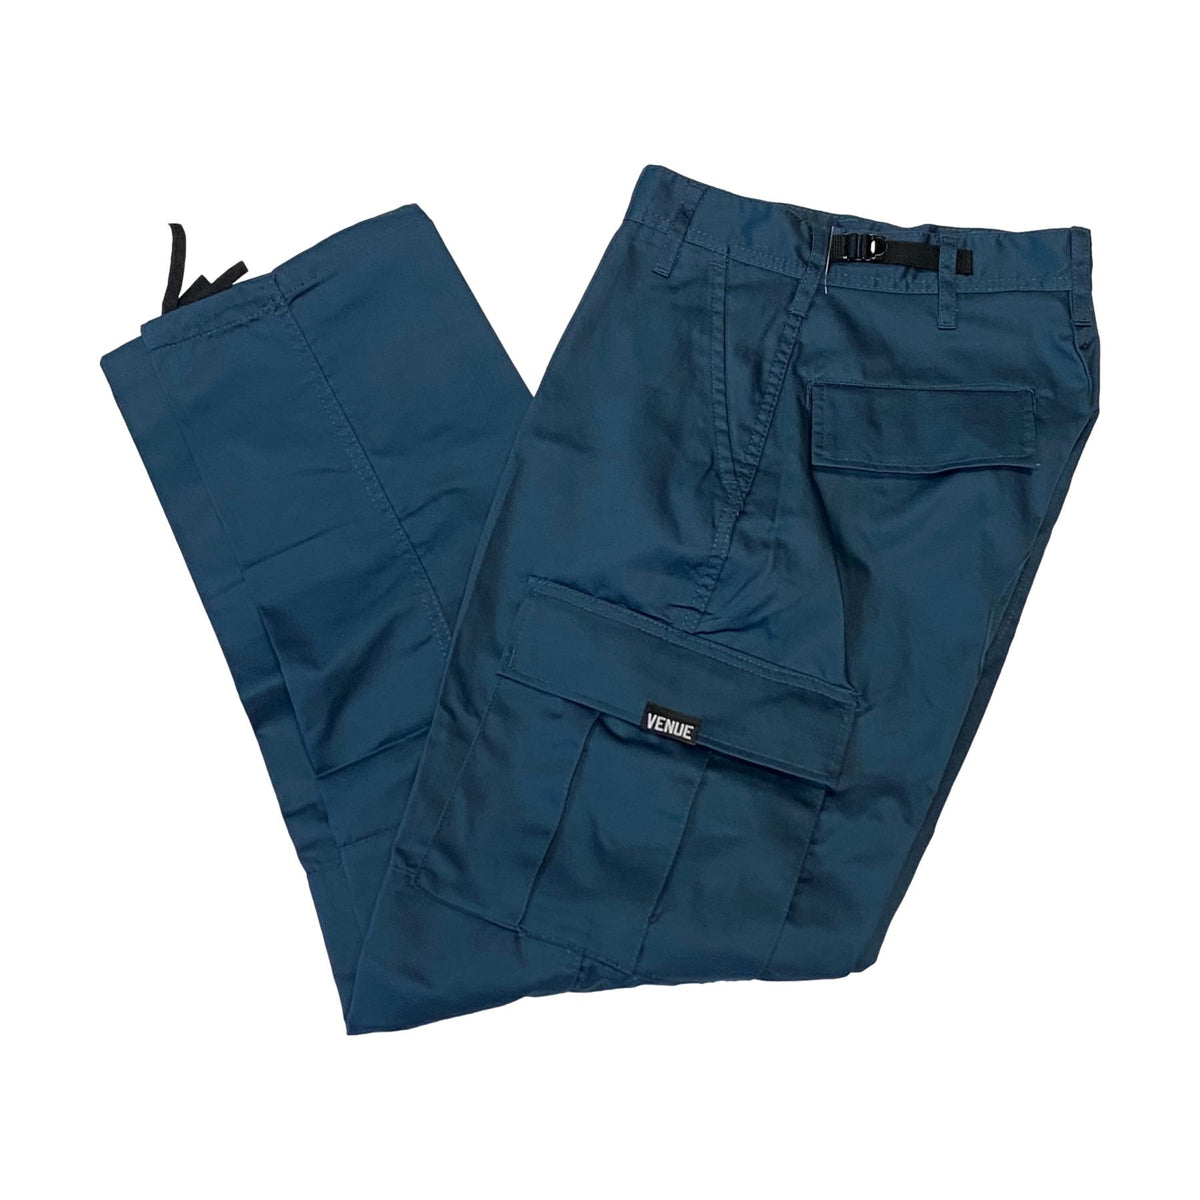 Venue Cargo Pants - Cadet Blue